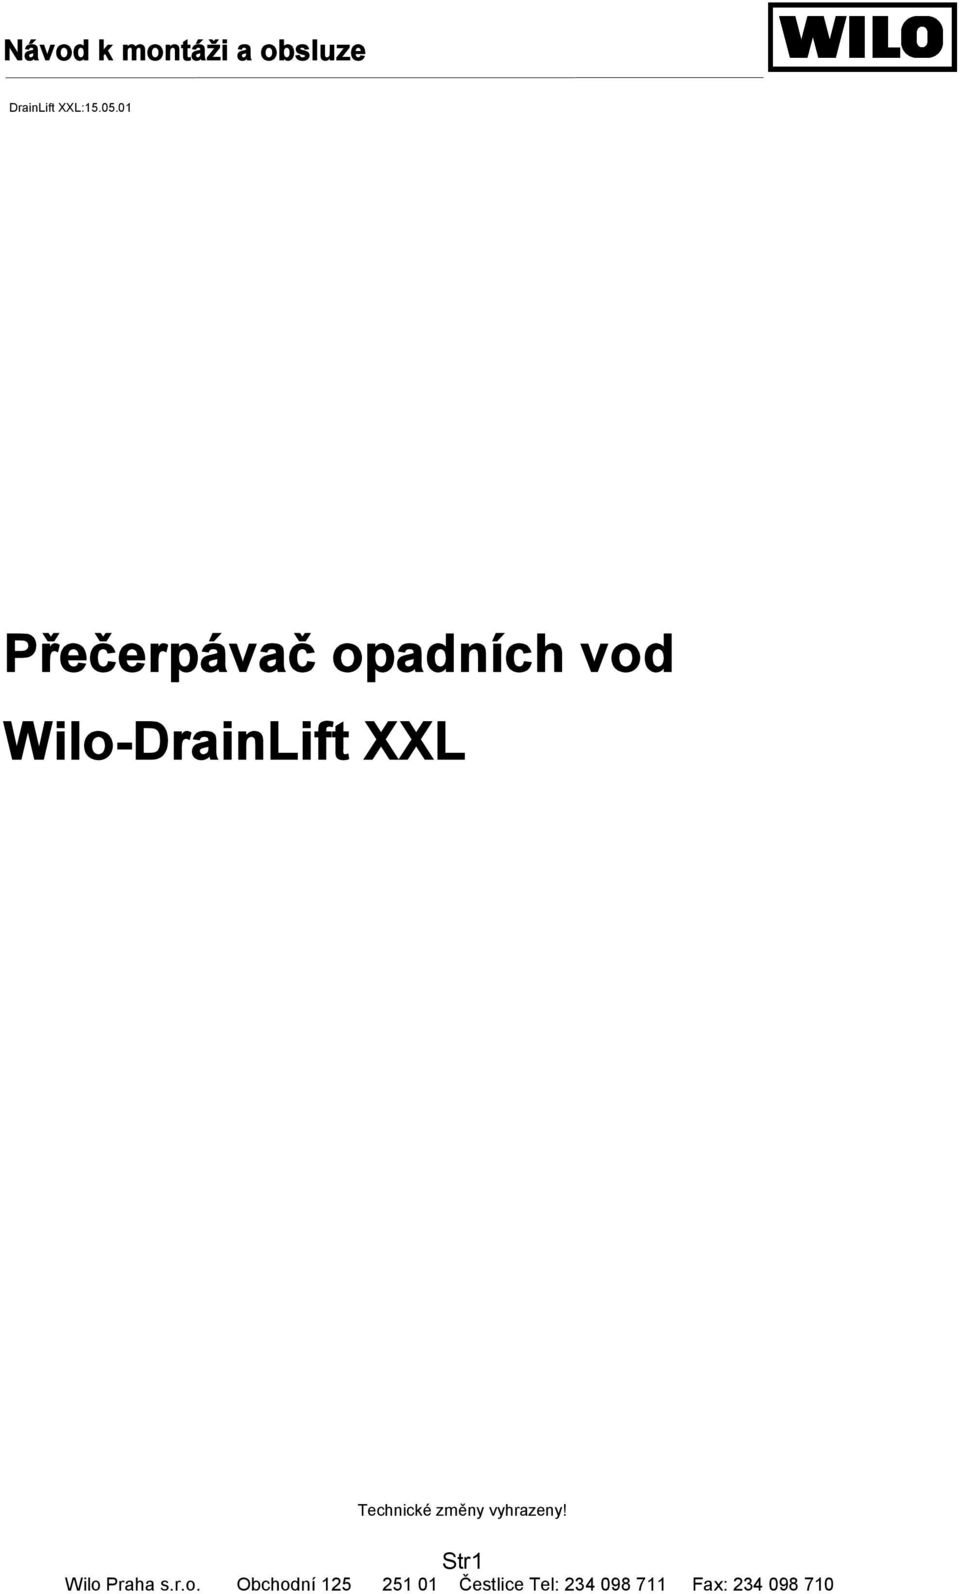 Wilo-DrainLift XXL